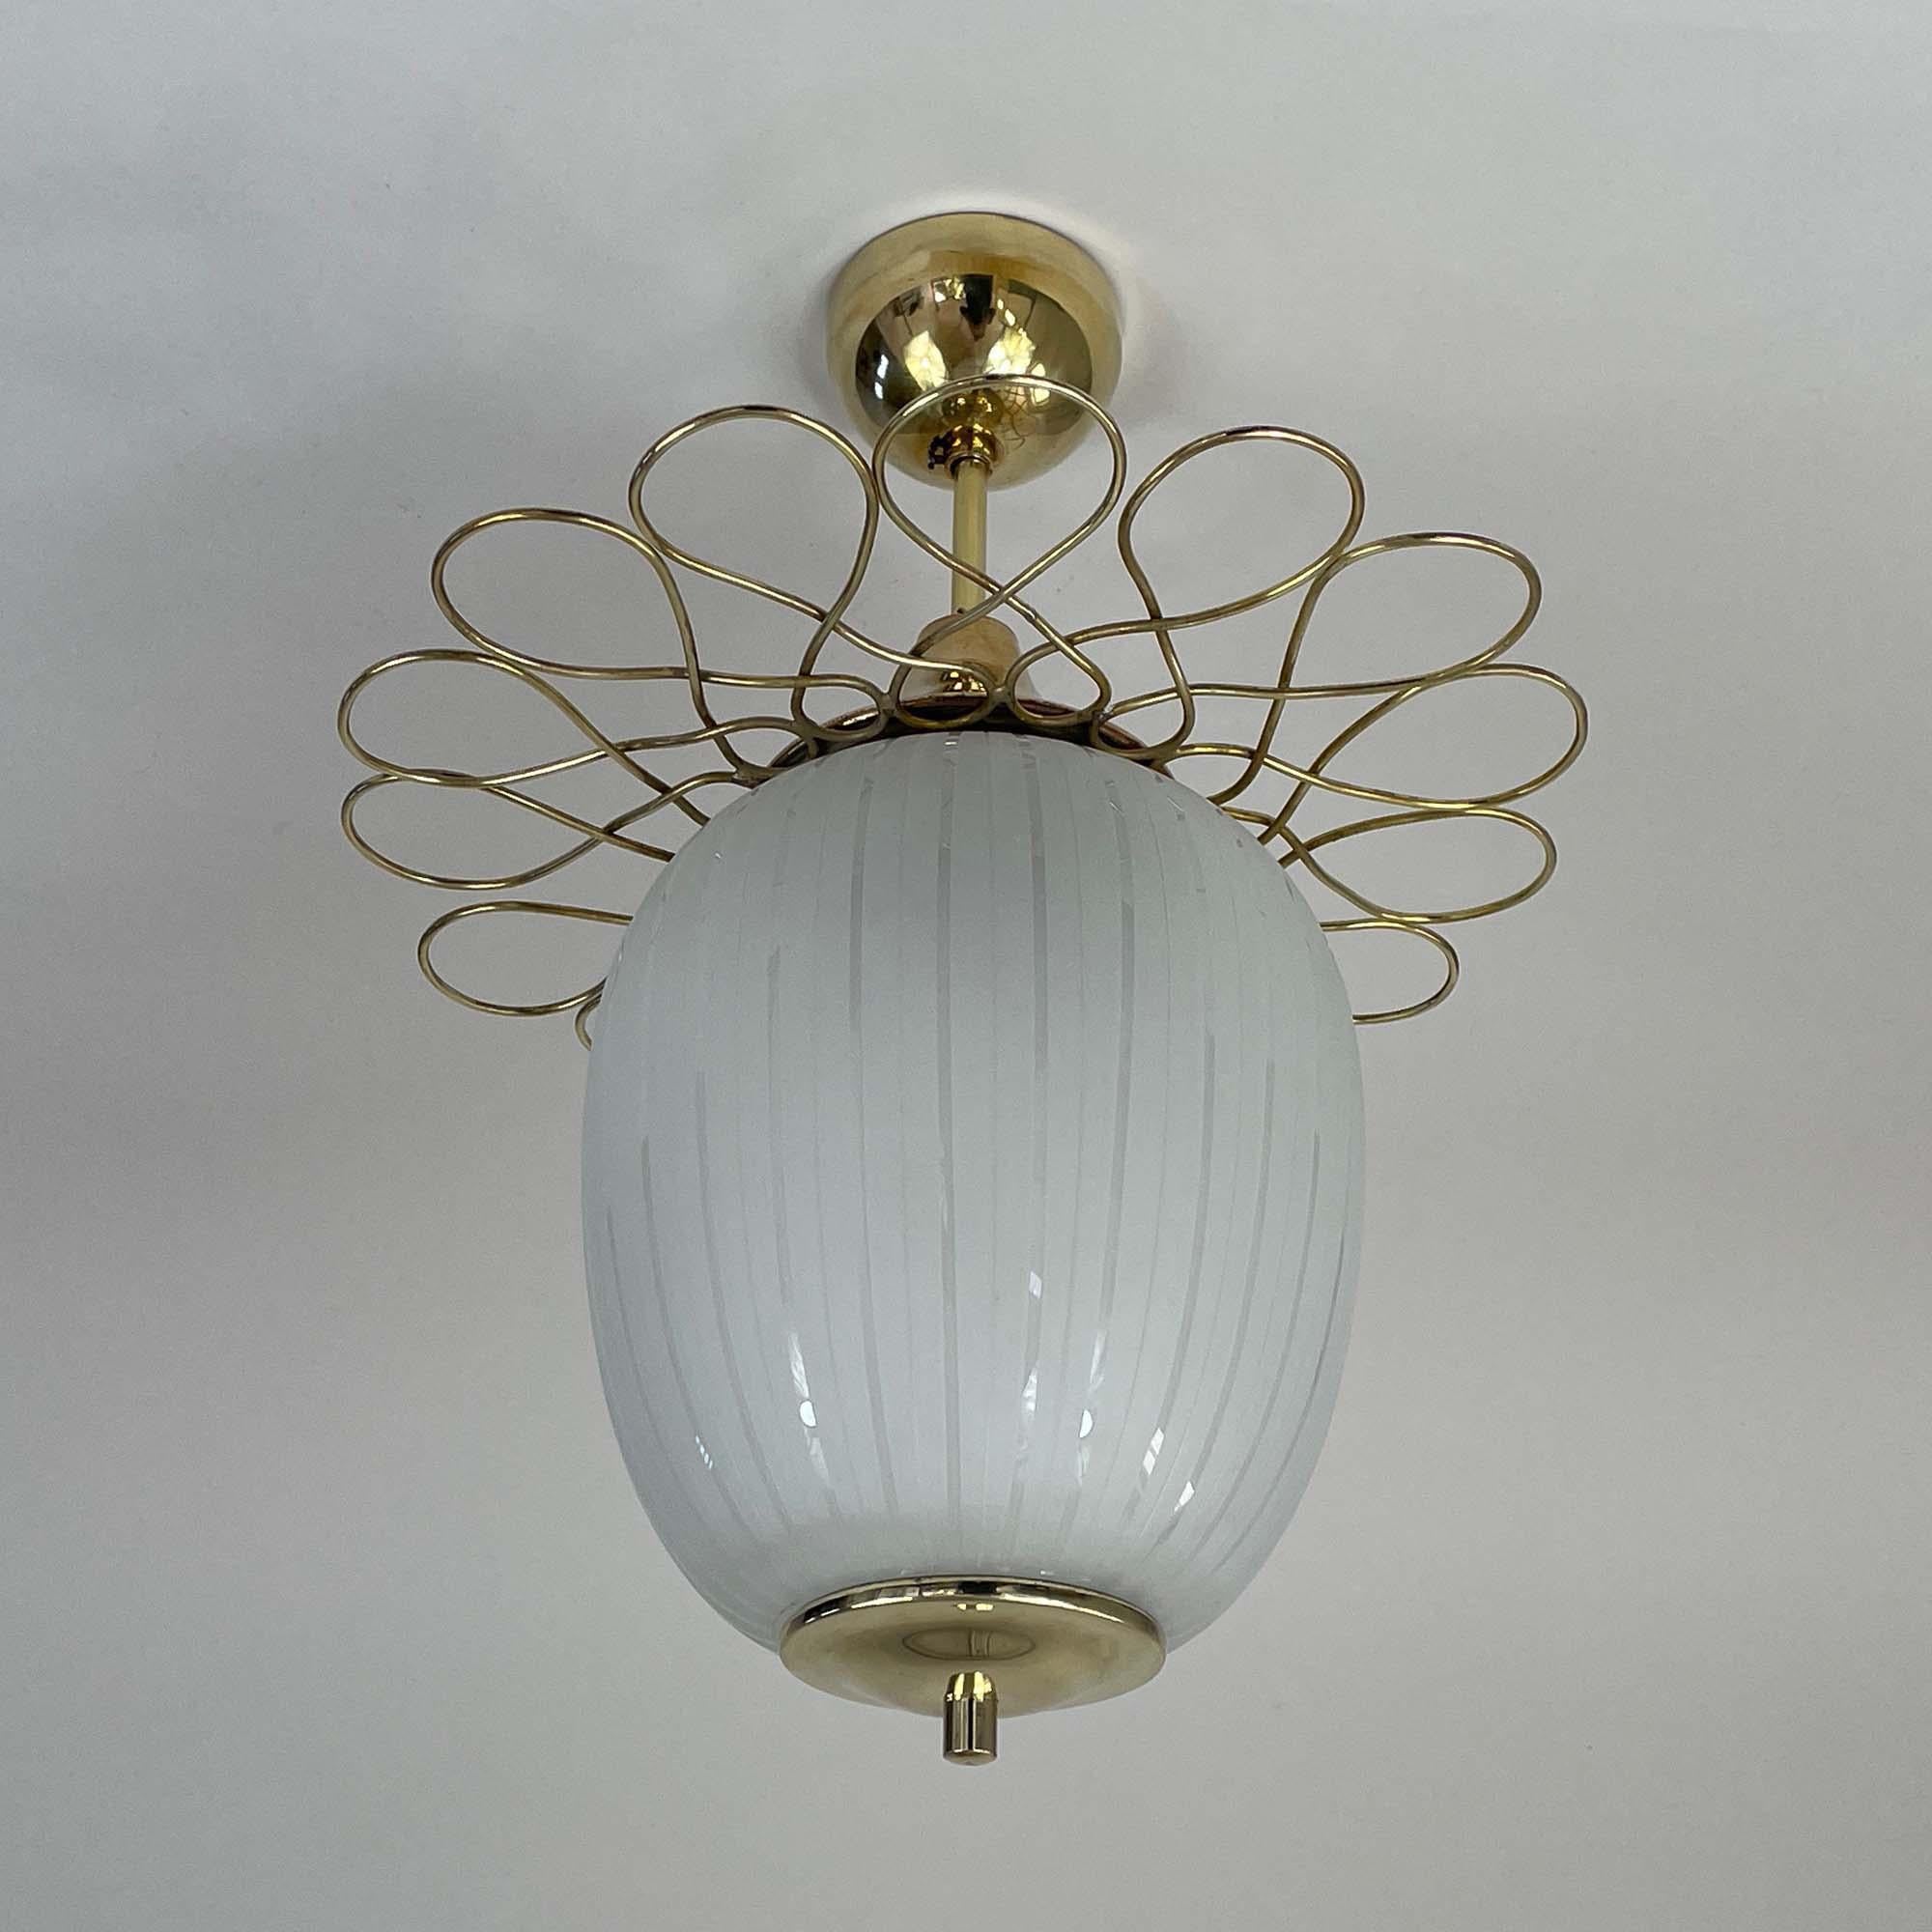 Diese elegante Halbunterputzleuchte wurde in den späten 1940er Jahren in Finnland entworfen und hergestellt. Sie verfügt über einen gestreiften und teilweise satinierten ovalen Lampenschirm aus Opalglas und Messingbeschläge.

Gesamthöhe: 44 cm